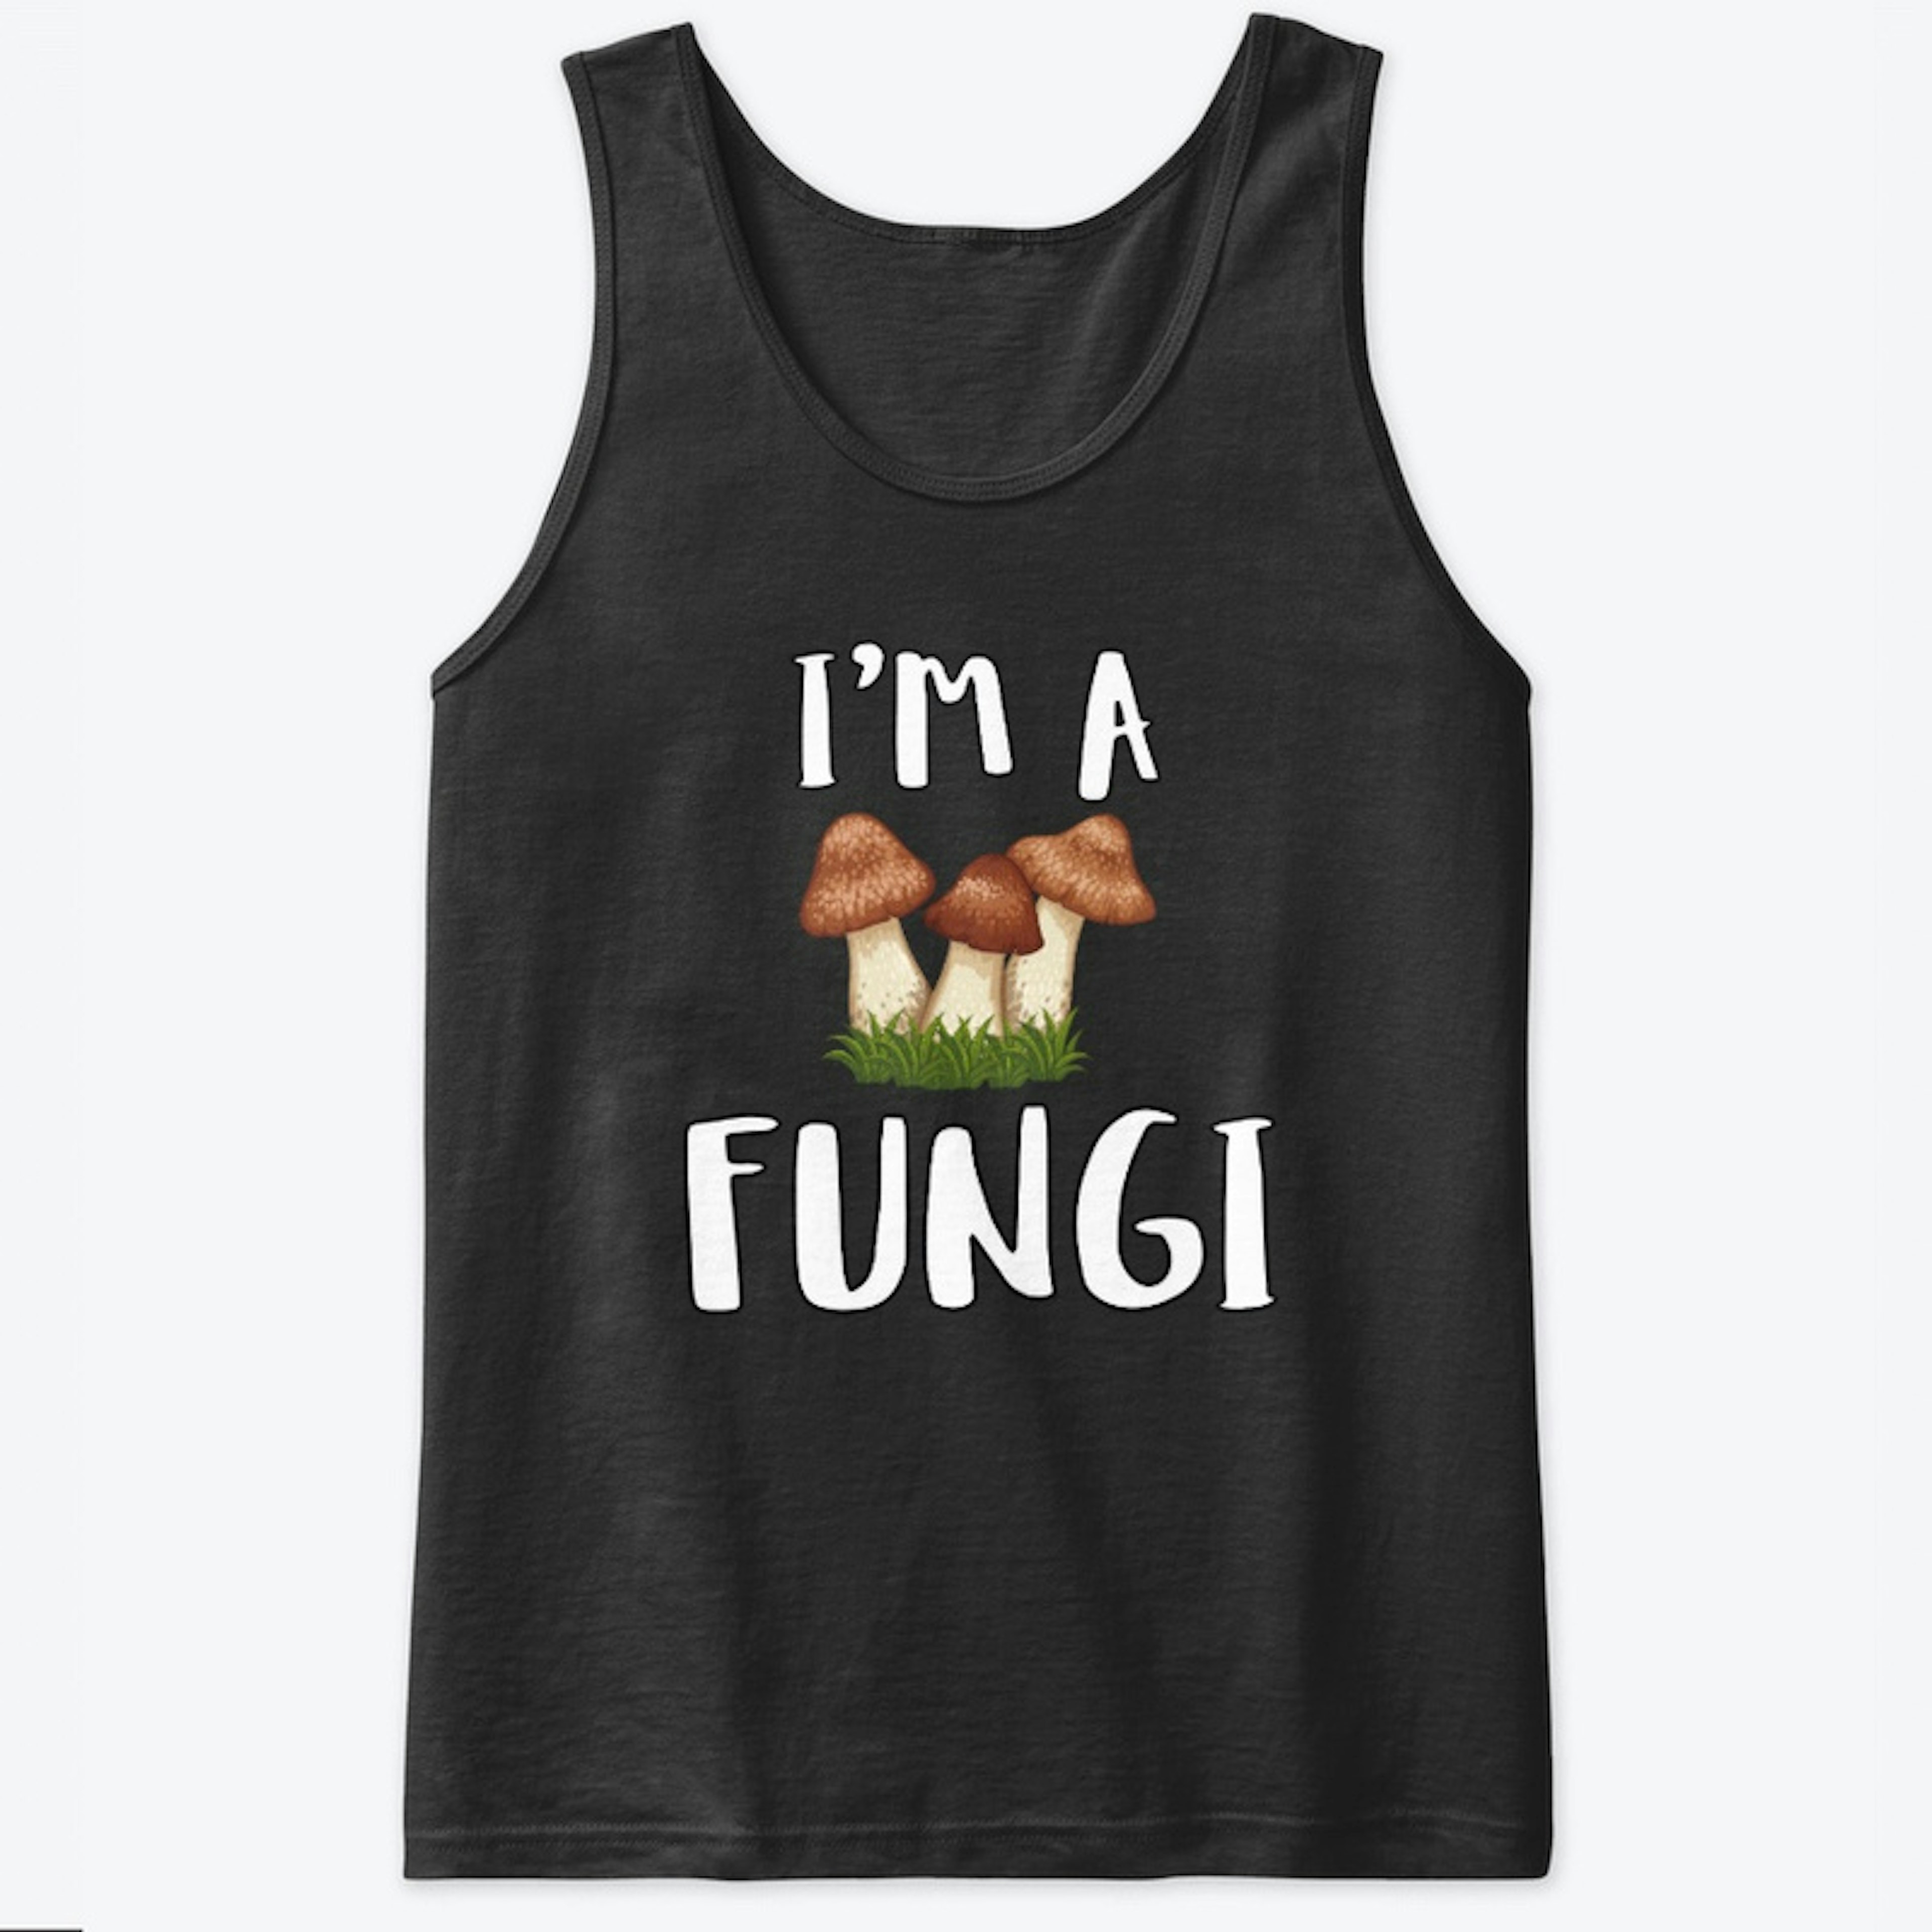 Fungi T